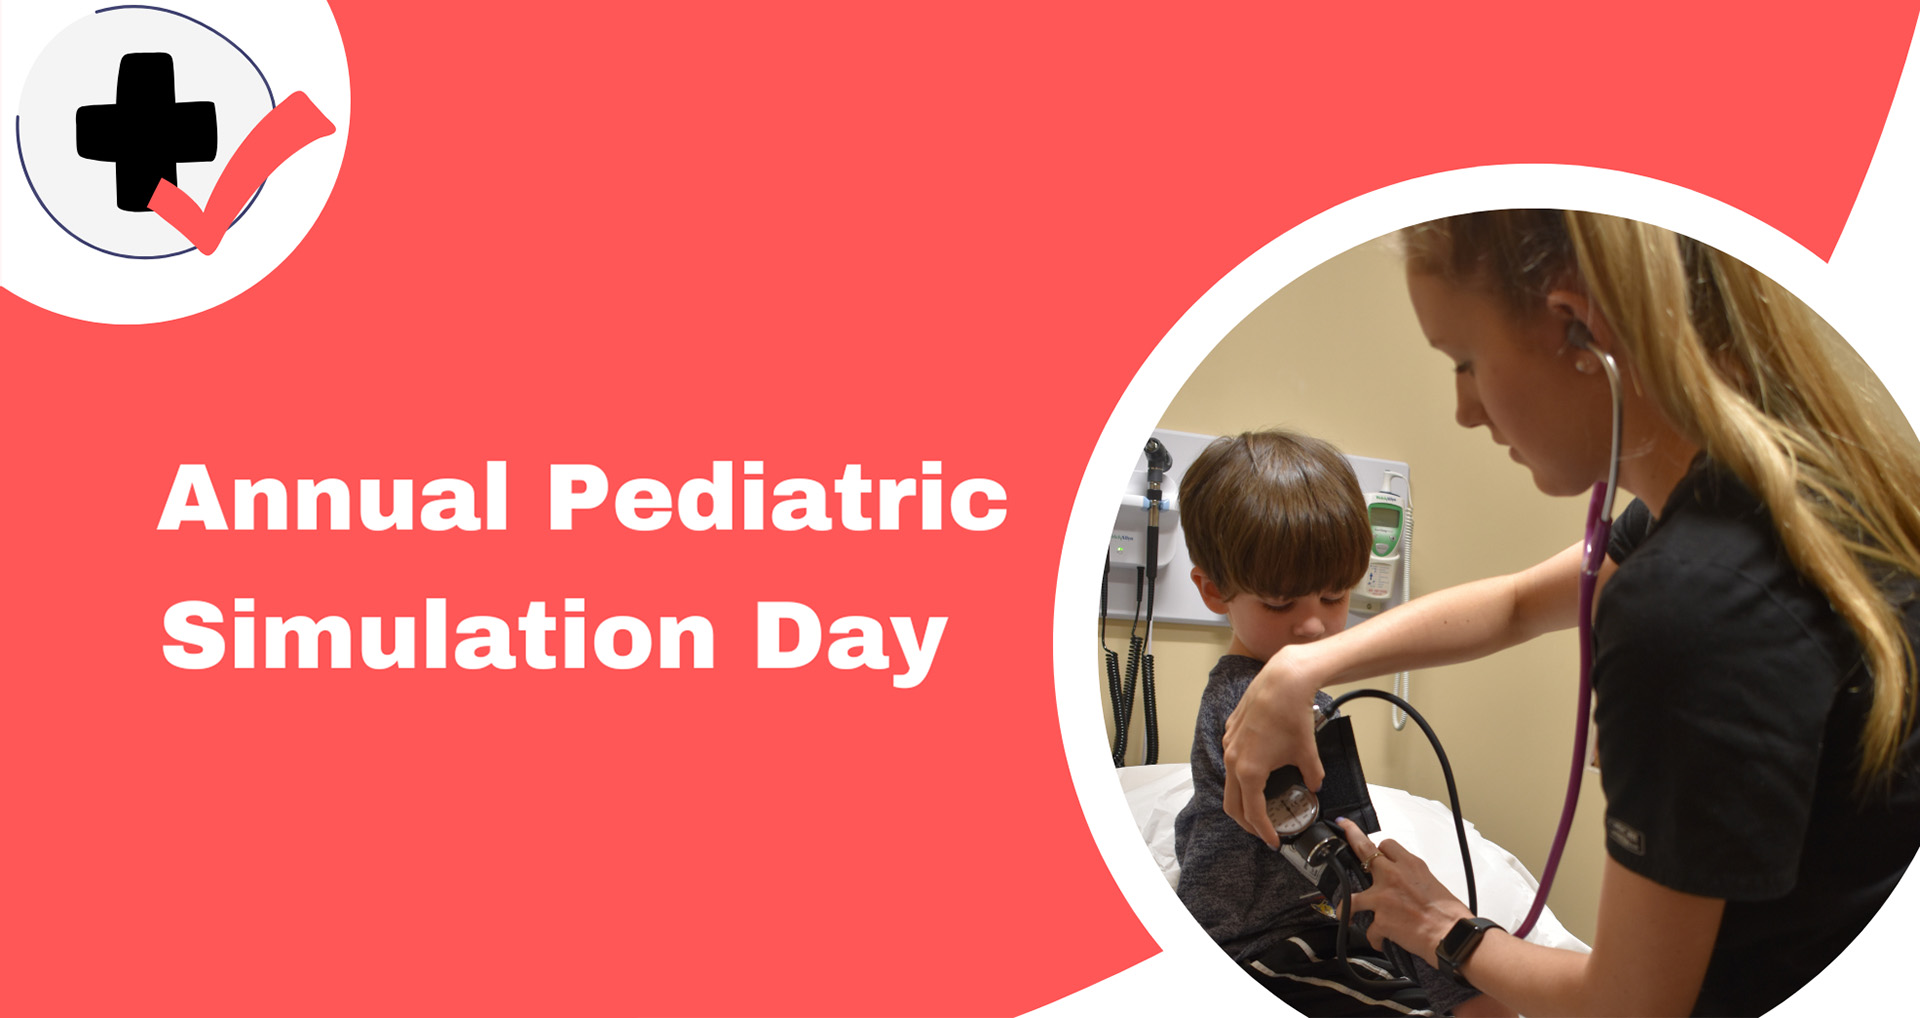 Annual Pediatric Simulation Day